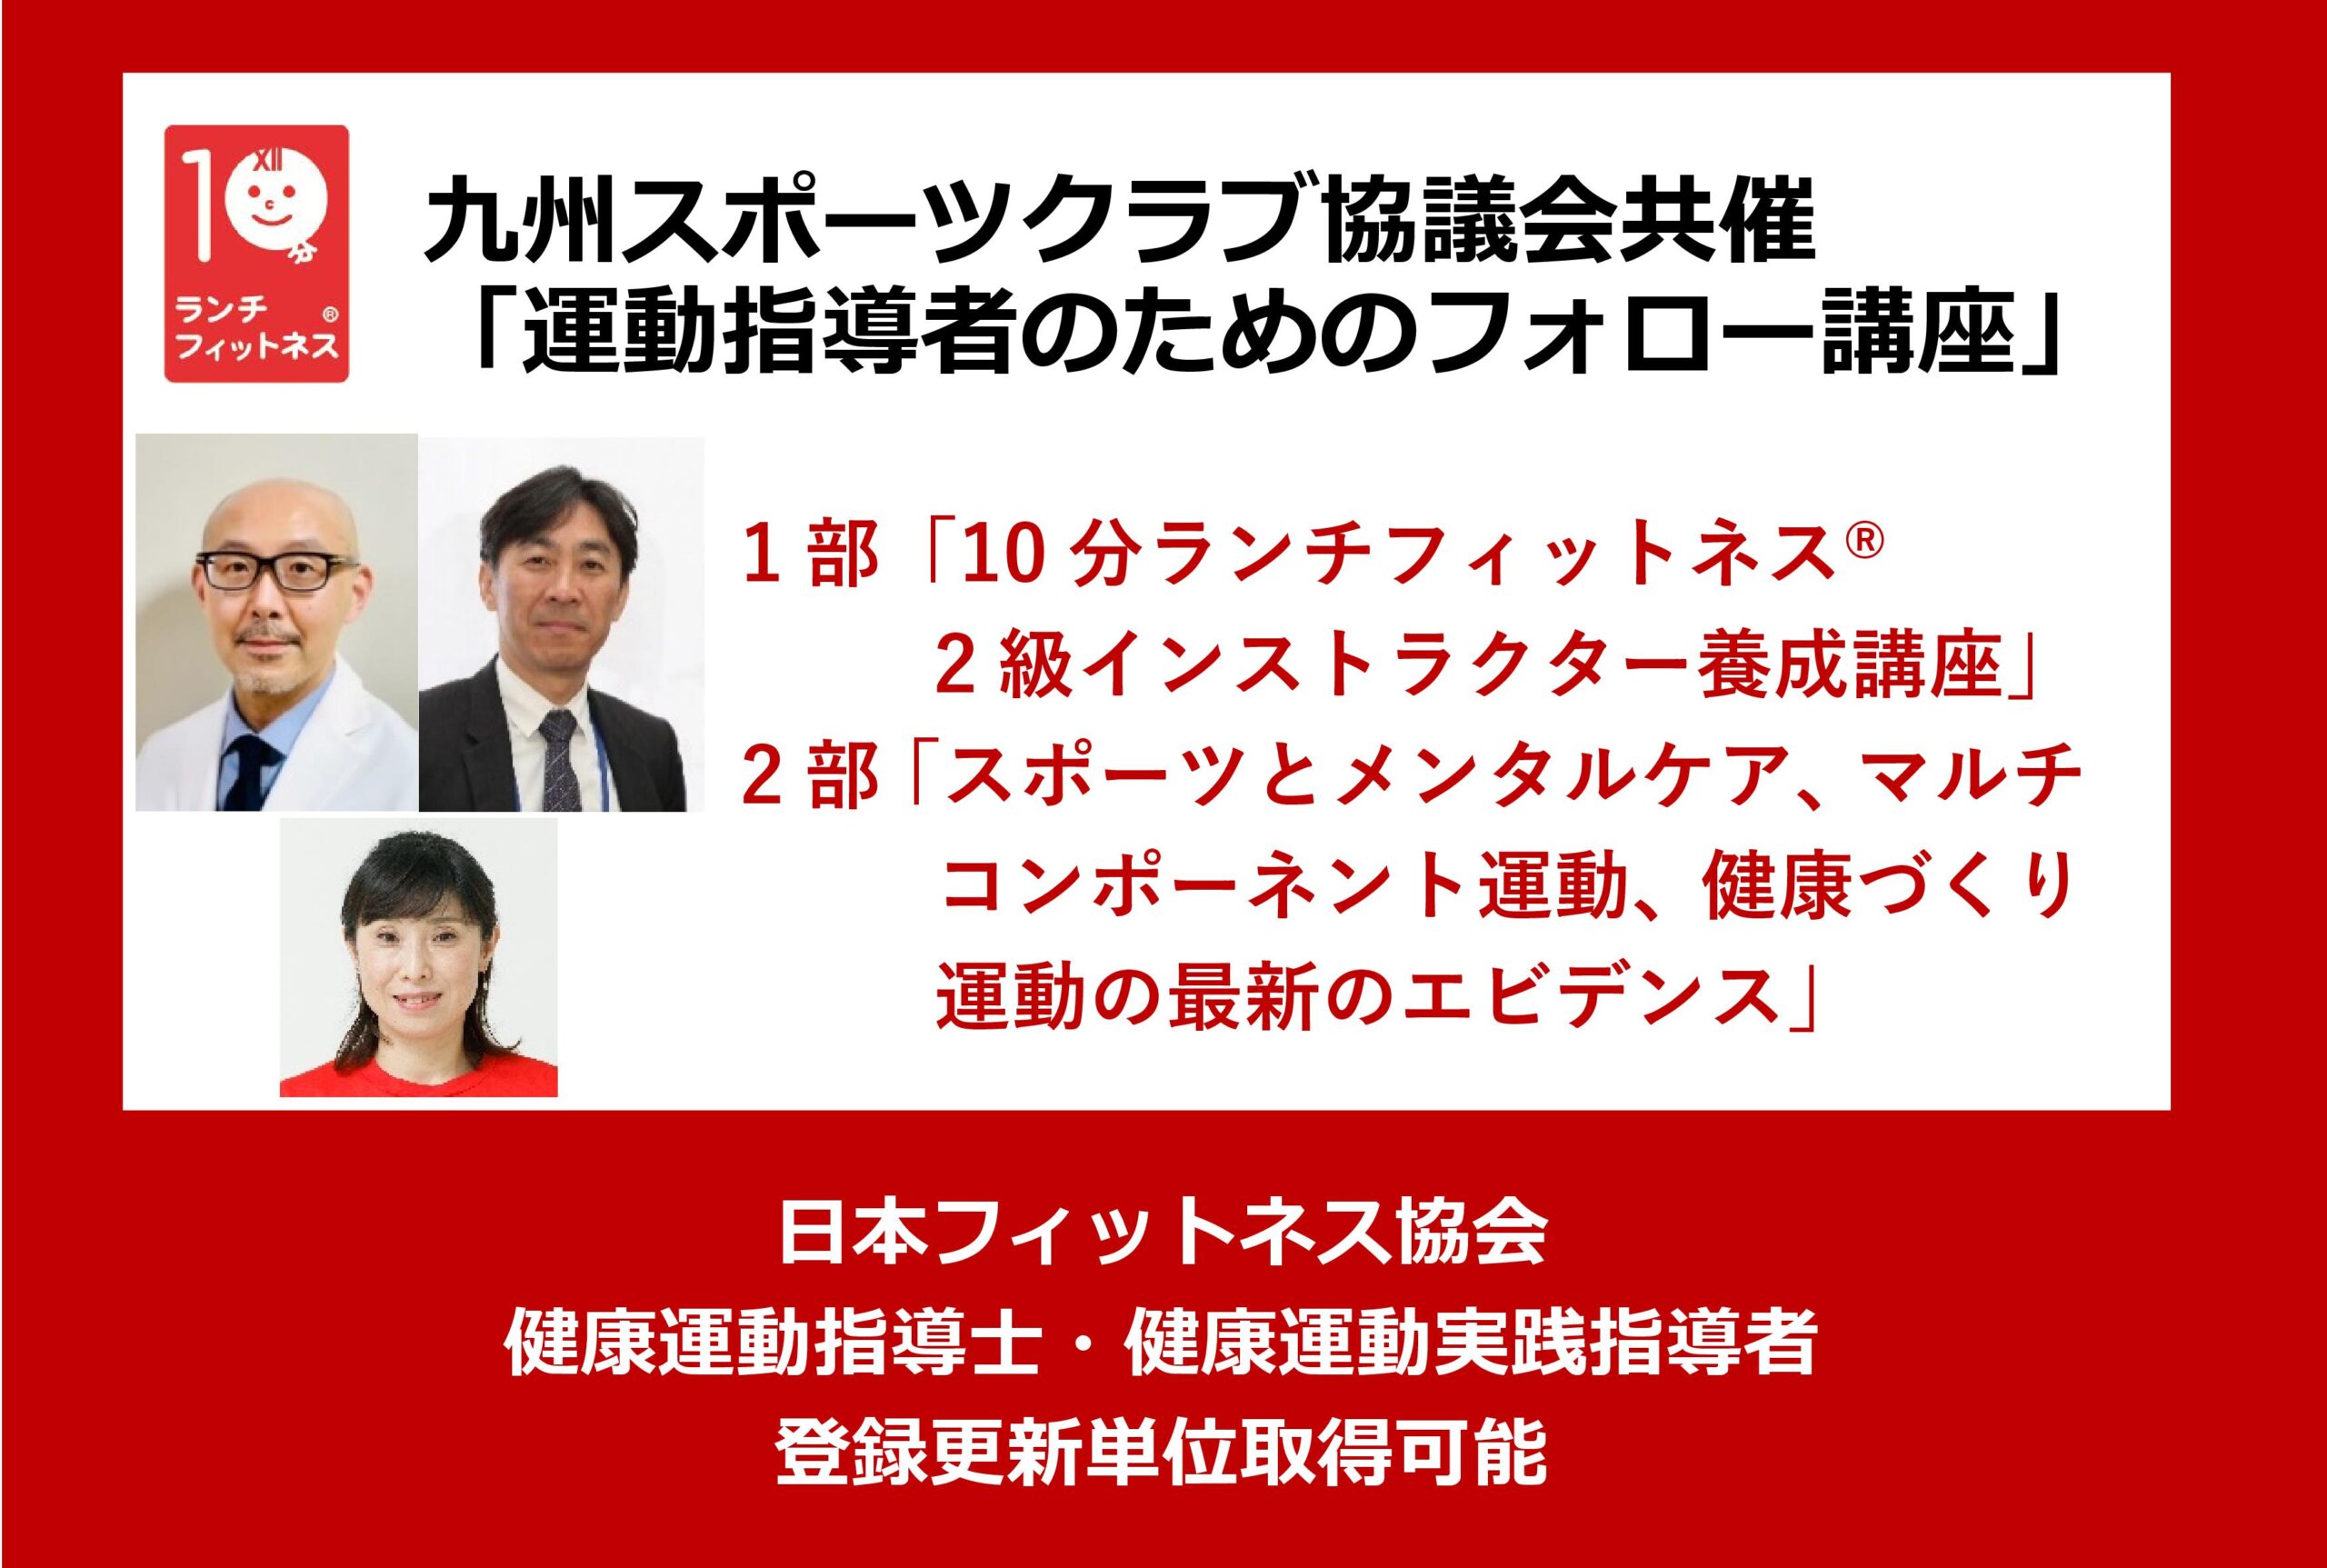 九州スポーツクラブ協議会共催「運動指導者のためのフォロー講座」